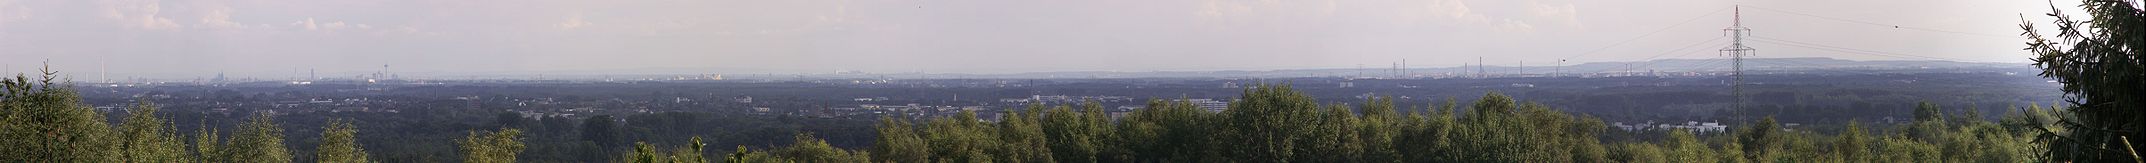 Teil der Bucht von Norden. Links ist der Kölner Dom und der Fernmeldeturm Colonius zu erkennen. Am rechten Bildrand ist das Bayerwerk Dormagen. Im Hintergrund links die Eifel, die Ville in der Mitte und Braunkohleabraumhalden rechts.